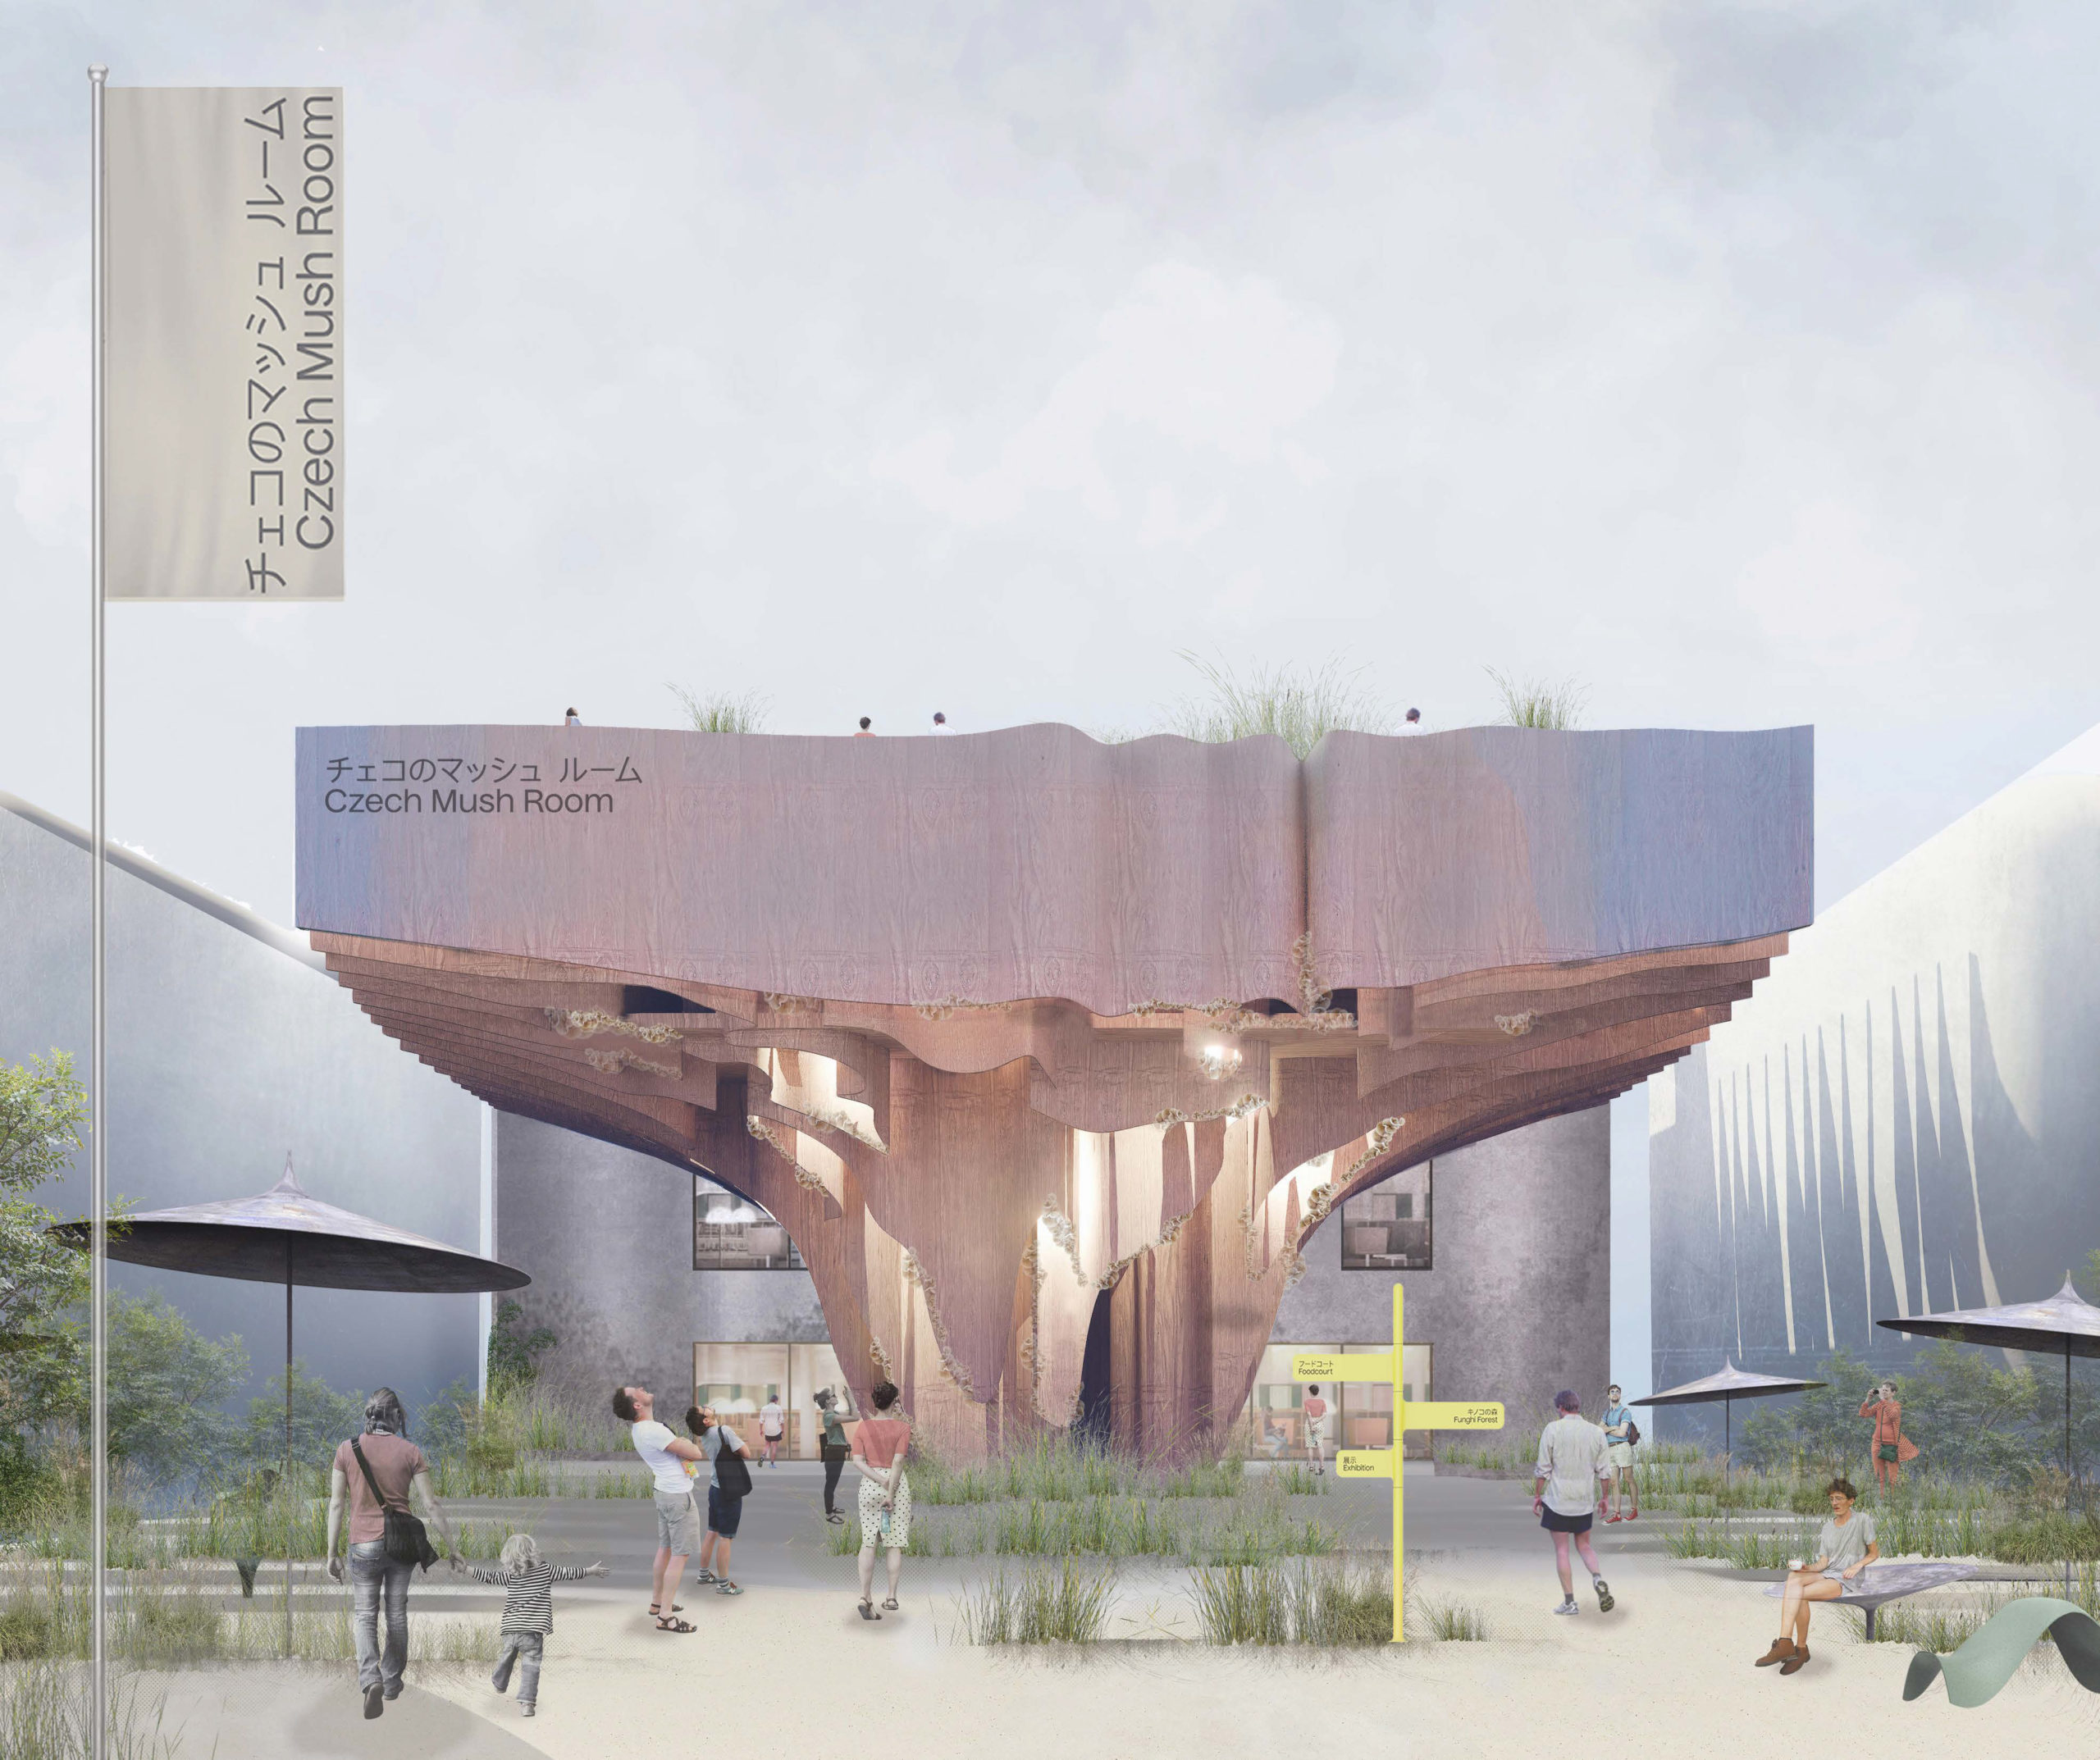 Návrh českého pavilonu pro mezinárodní výstavu EXPO 2025 - Speciální odměna poroty